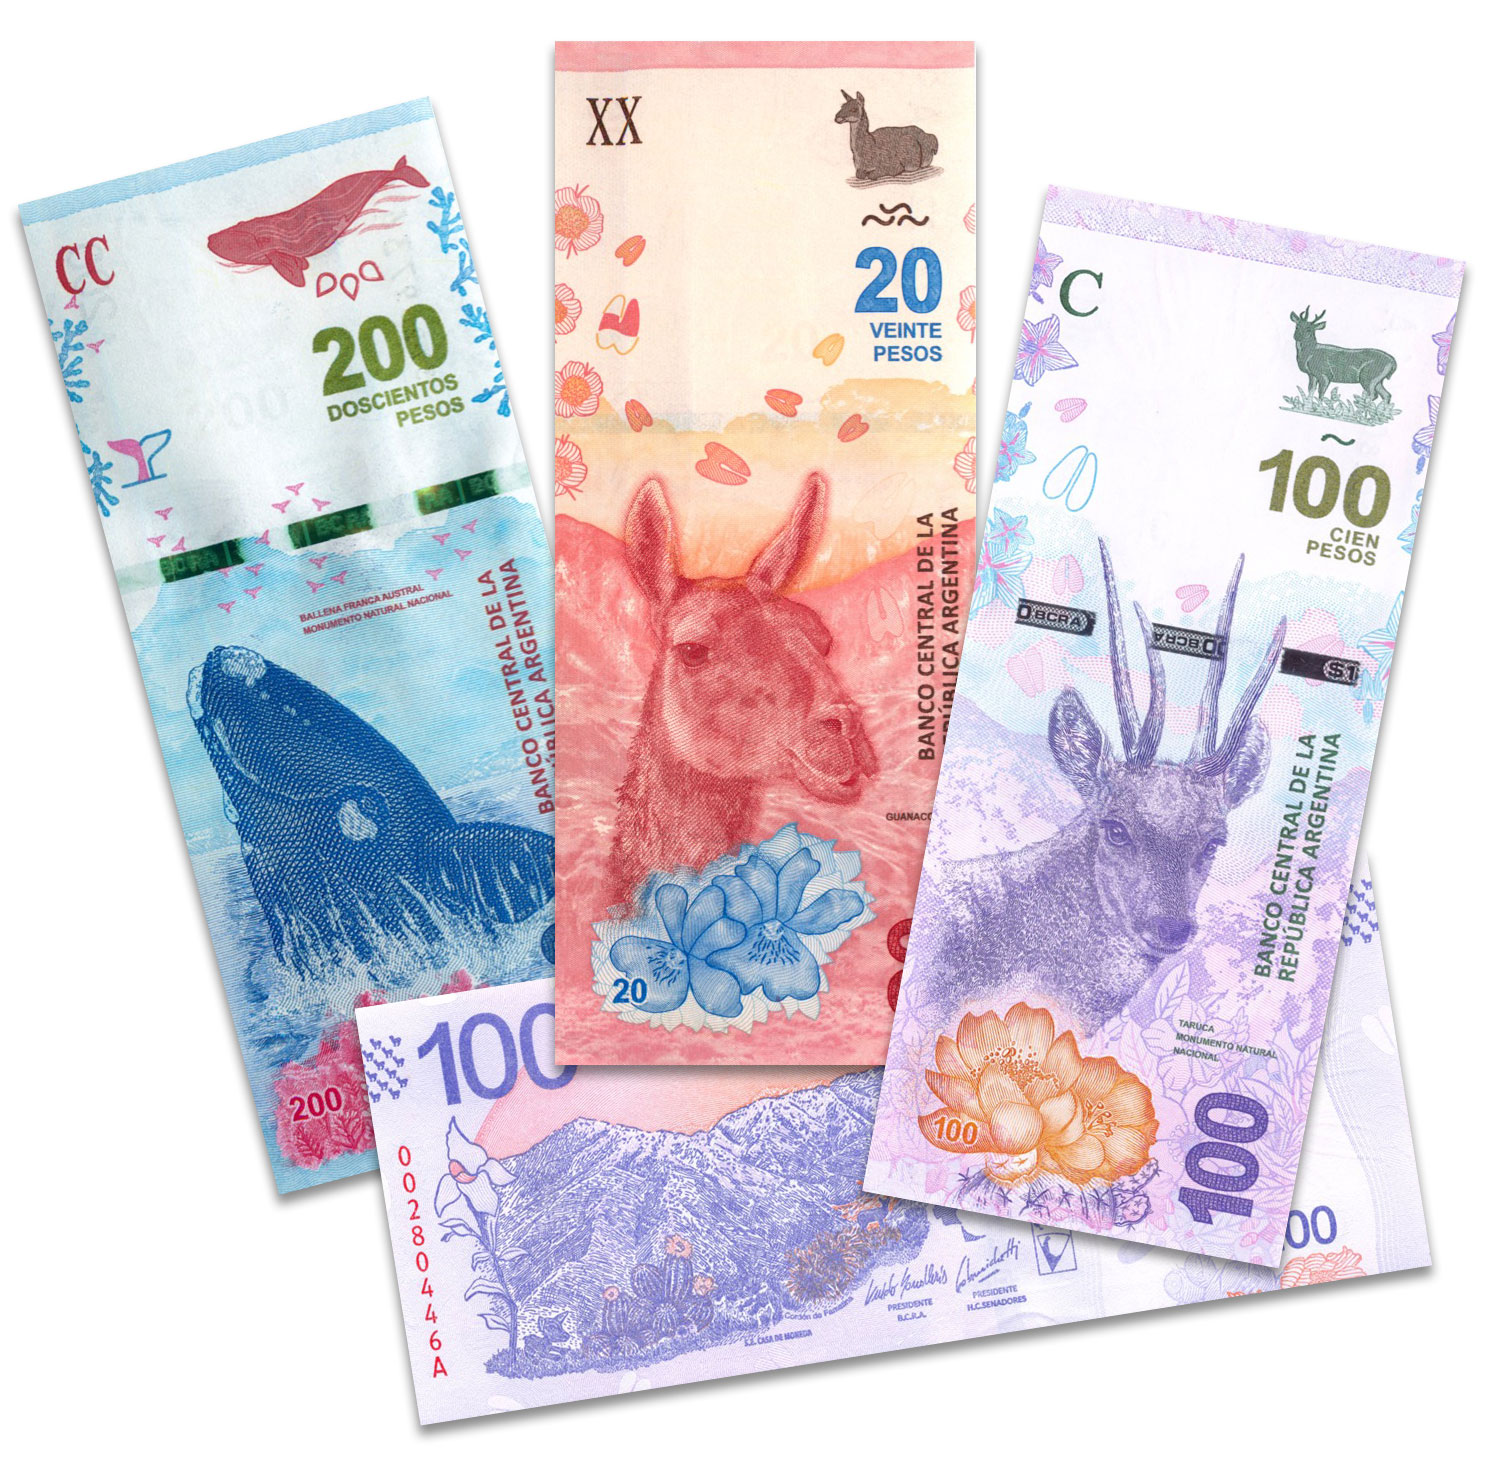 Банкноты Аргентины